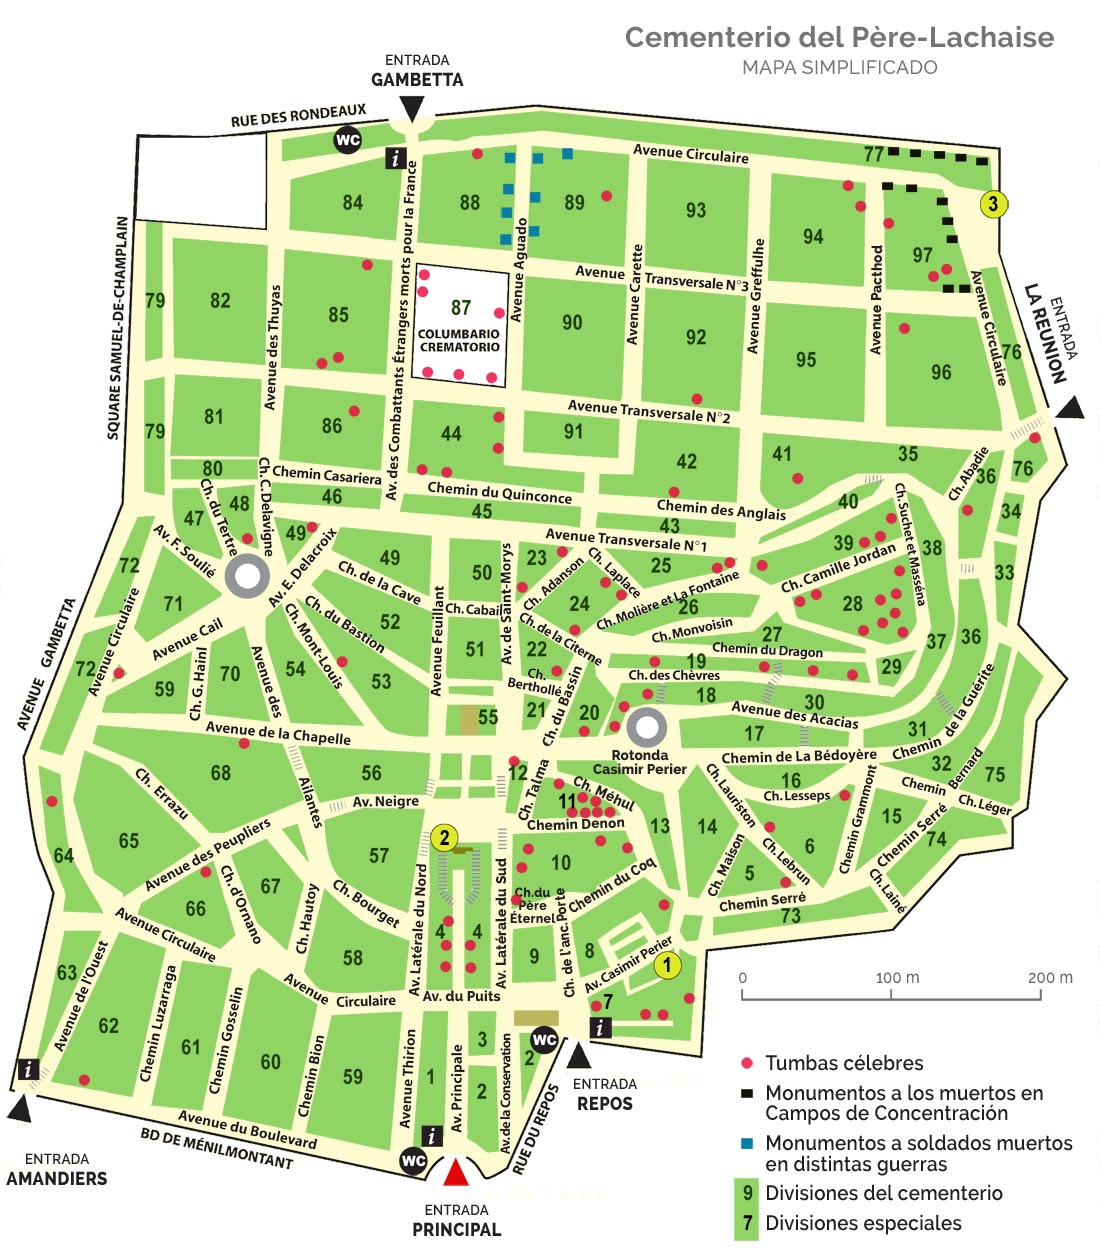 Mapa del cementerio del Père-Lachaise